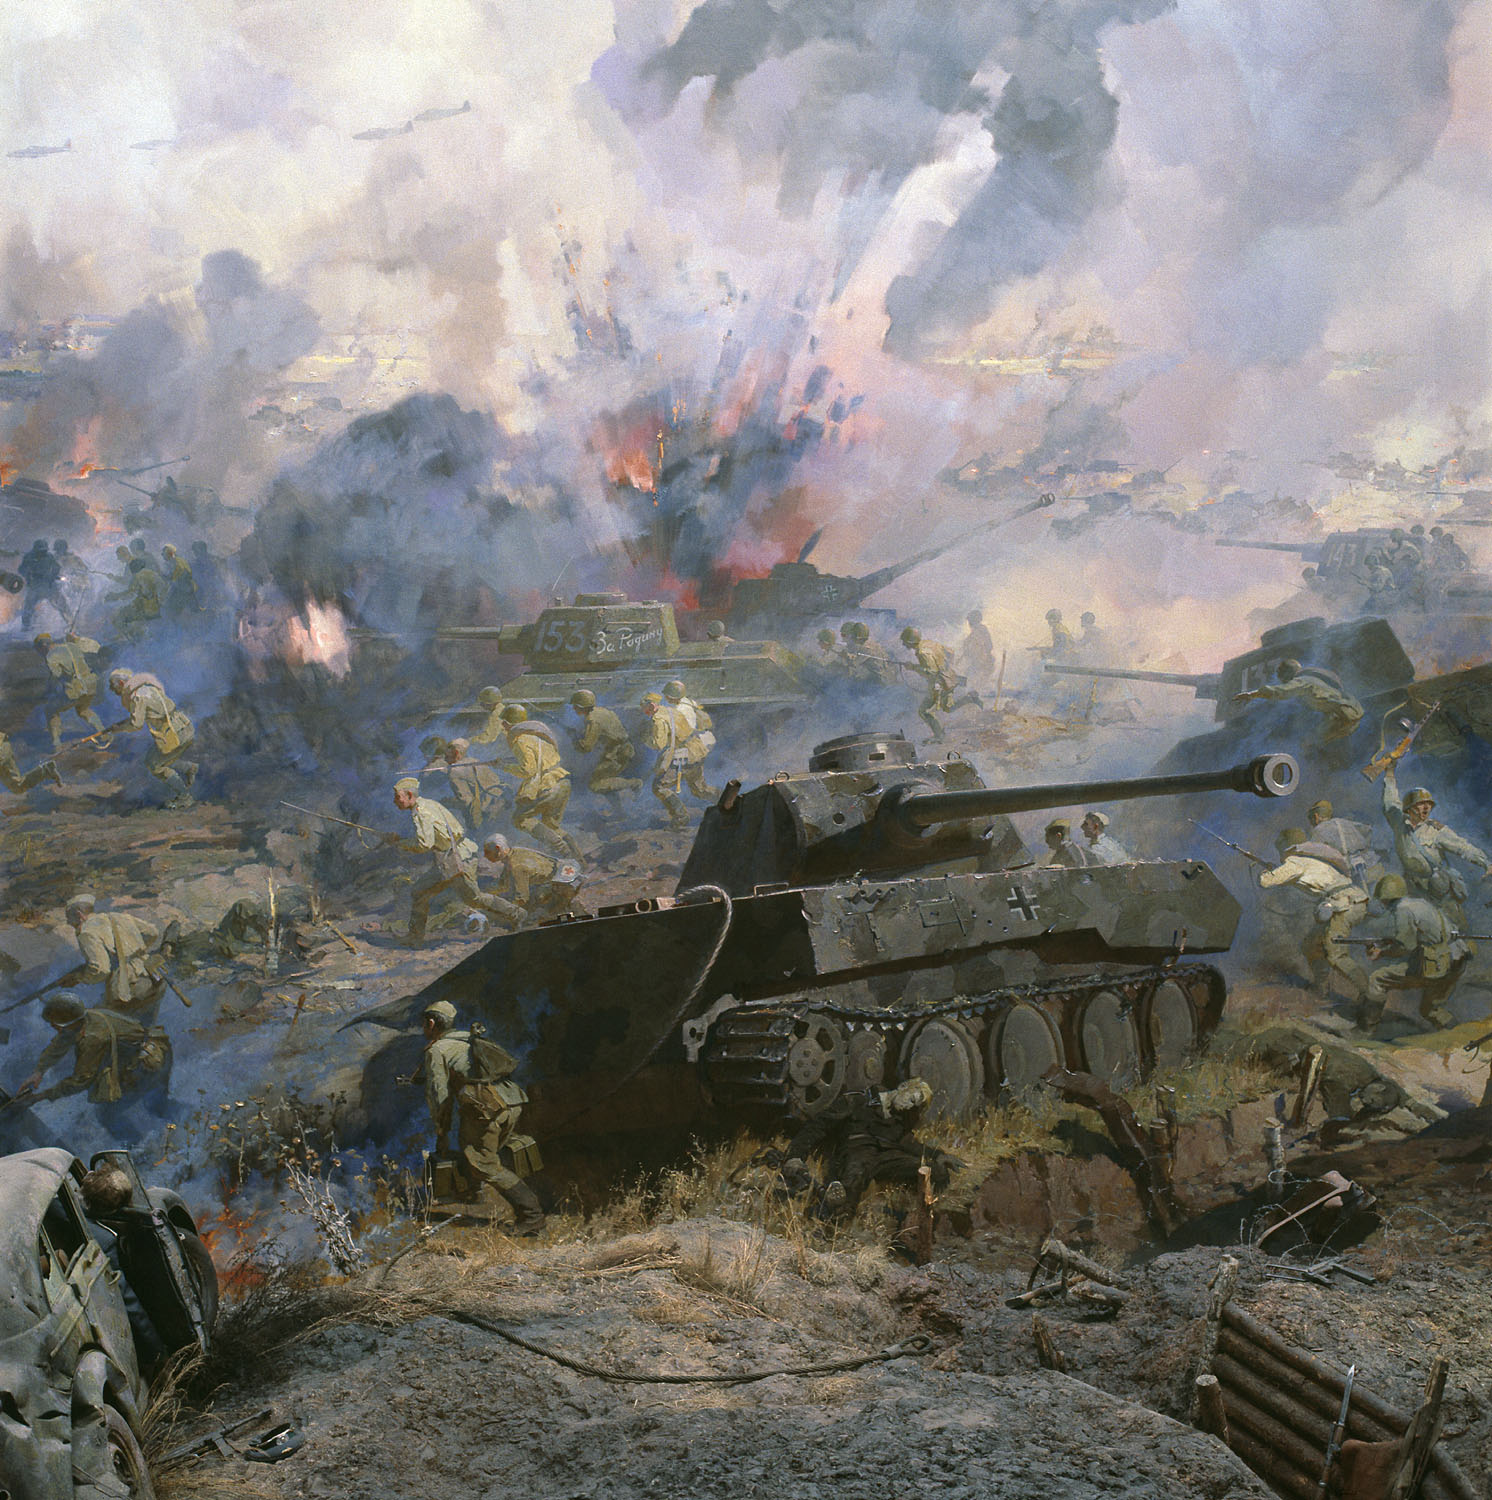 Картинка про великую войну. Огненная дуга Курская битва. Батальные картины Великой Отечественной войны.